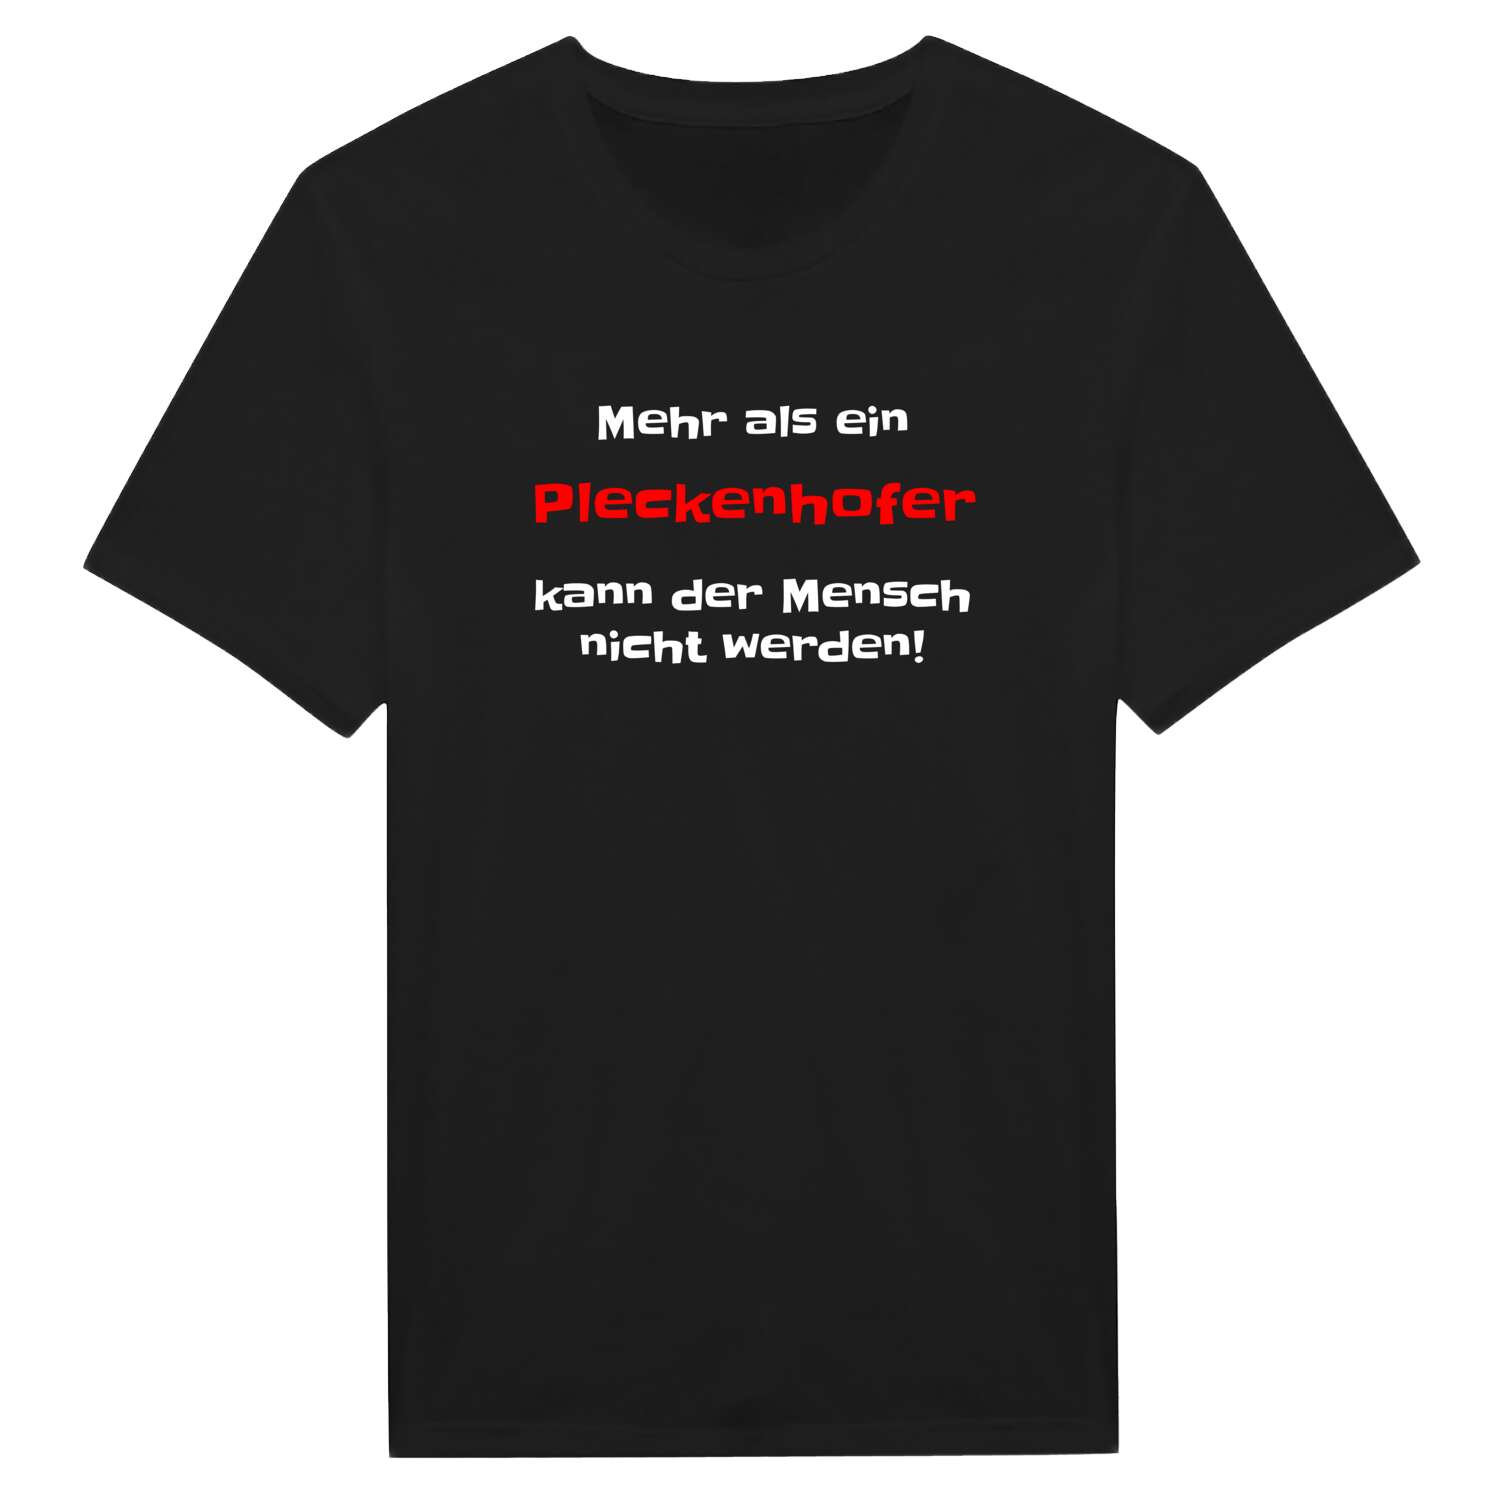 Pleckenhof T-Shirt »Mehr als ein«